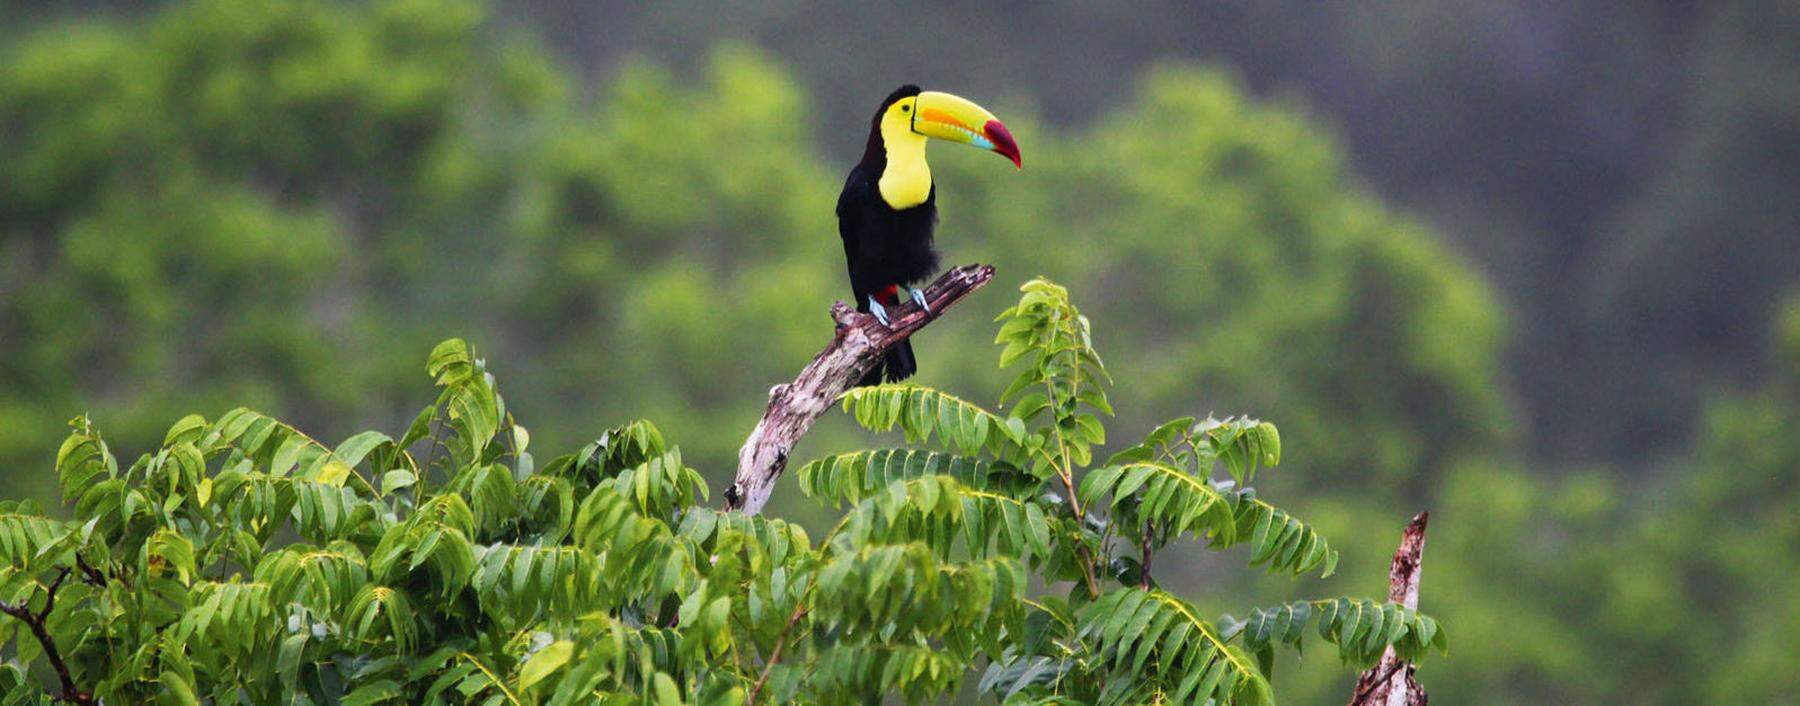 Artenvielfalt. Rund zwei Drittel aller Tier- und Pflanzenarten leben in den Tropenwäldern